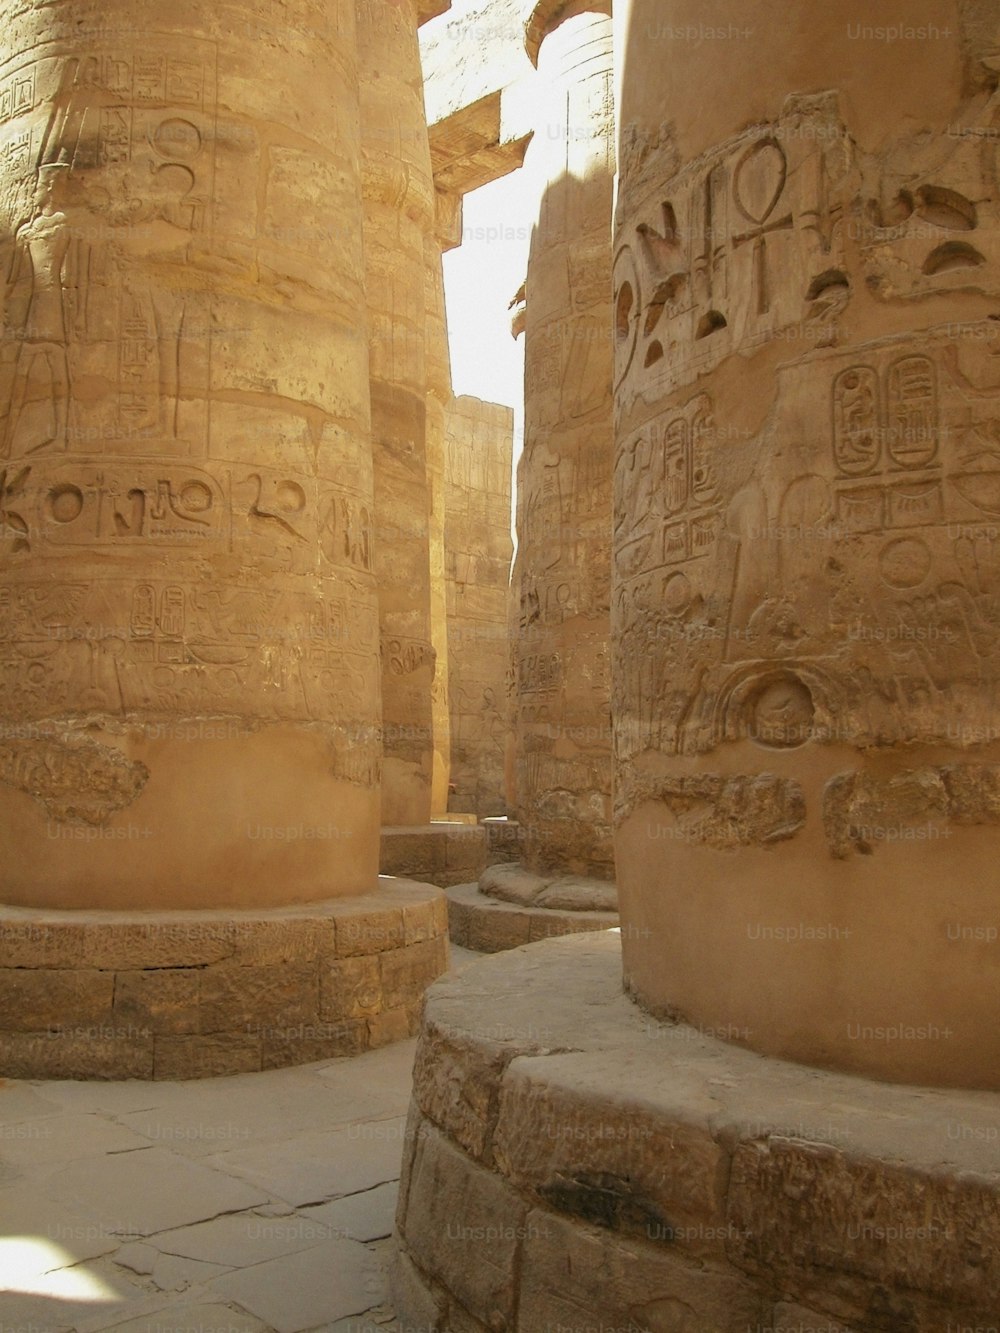 Die Säulen des Tempels sind mit altägyptischer Schrift geschnitzt